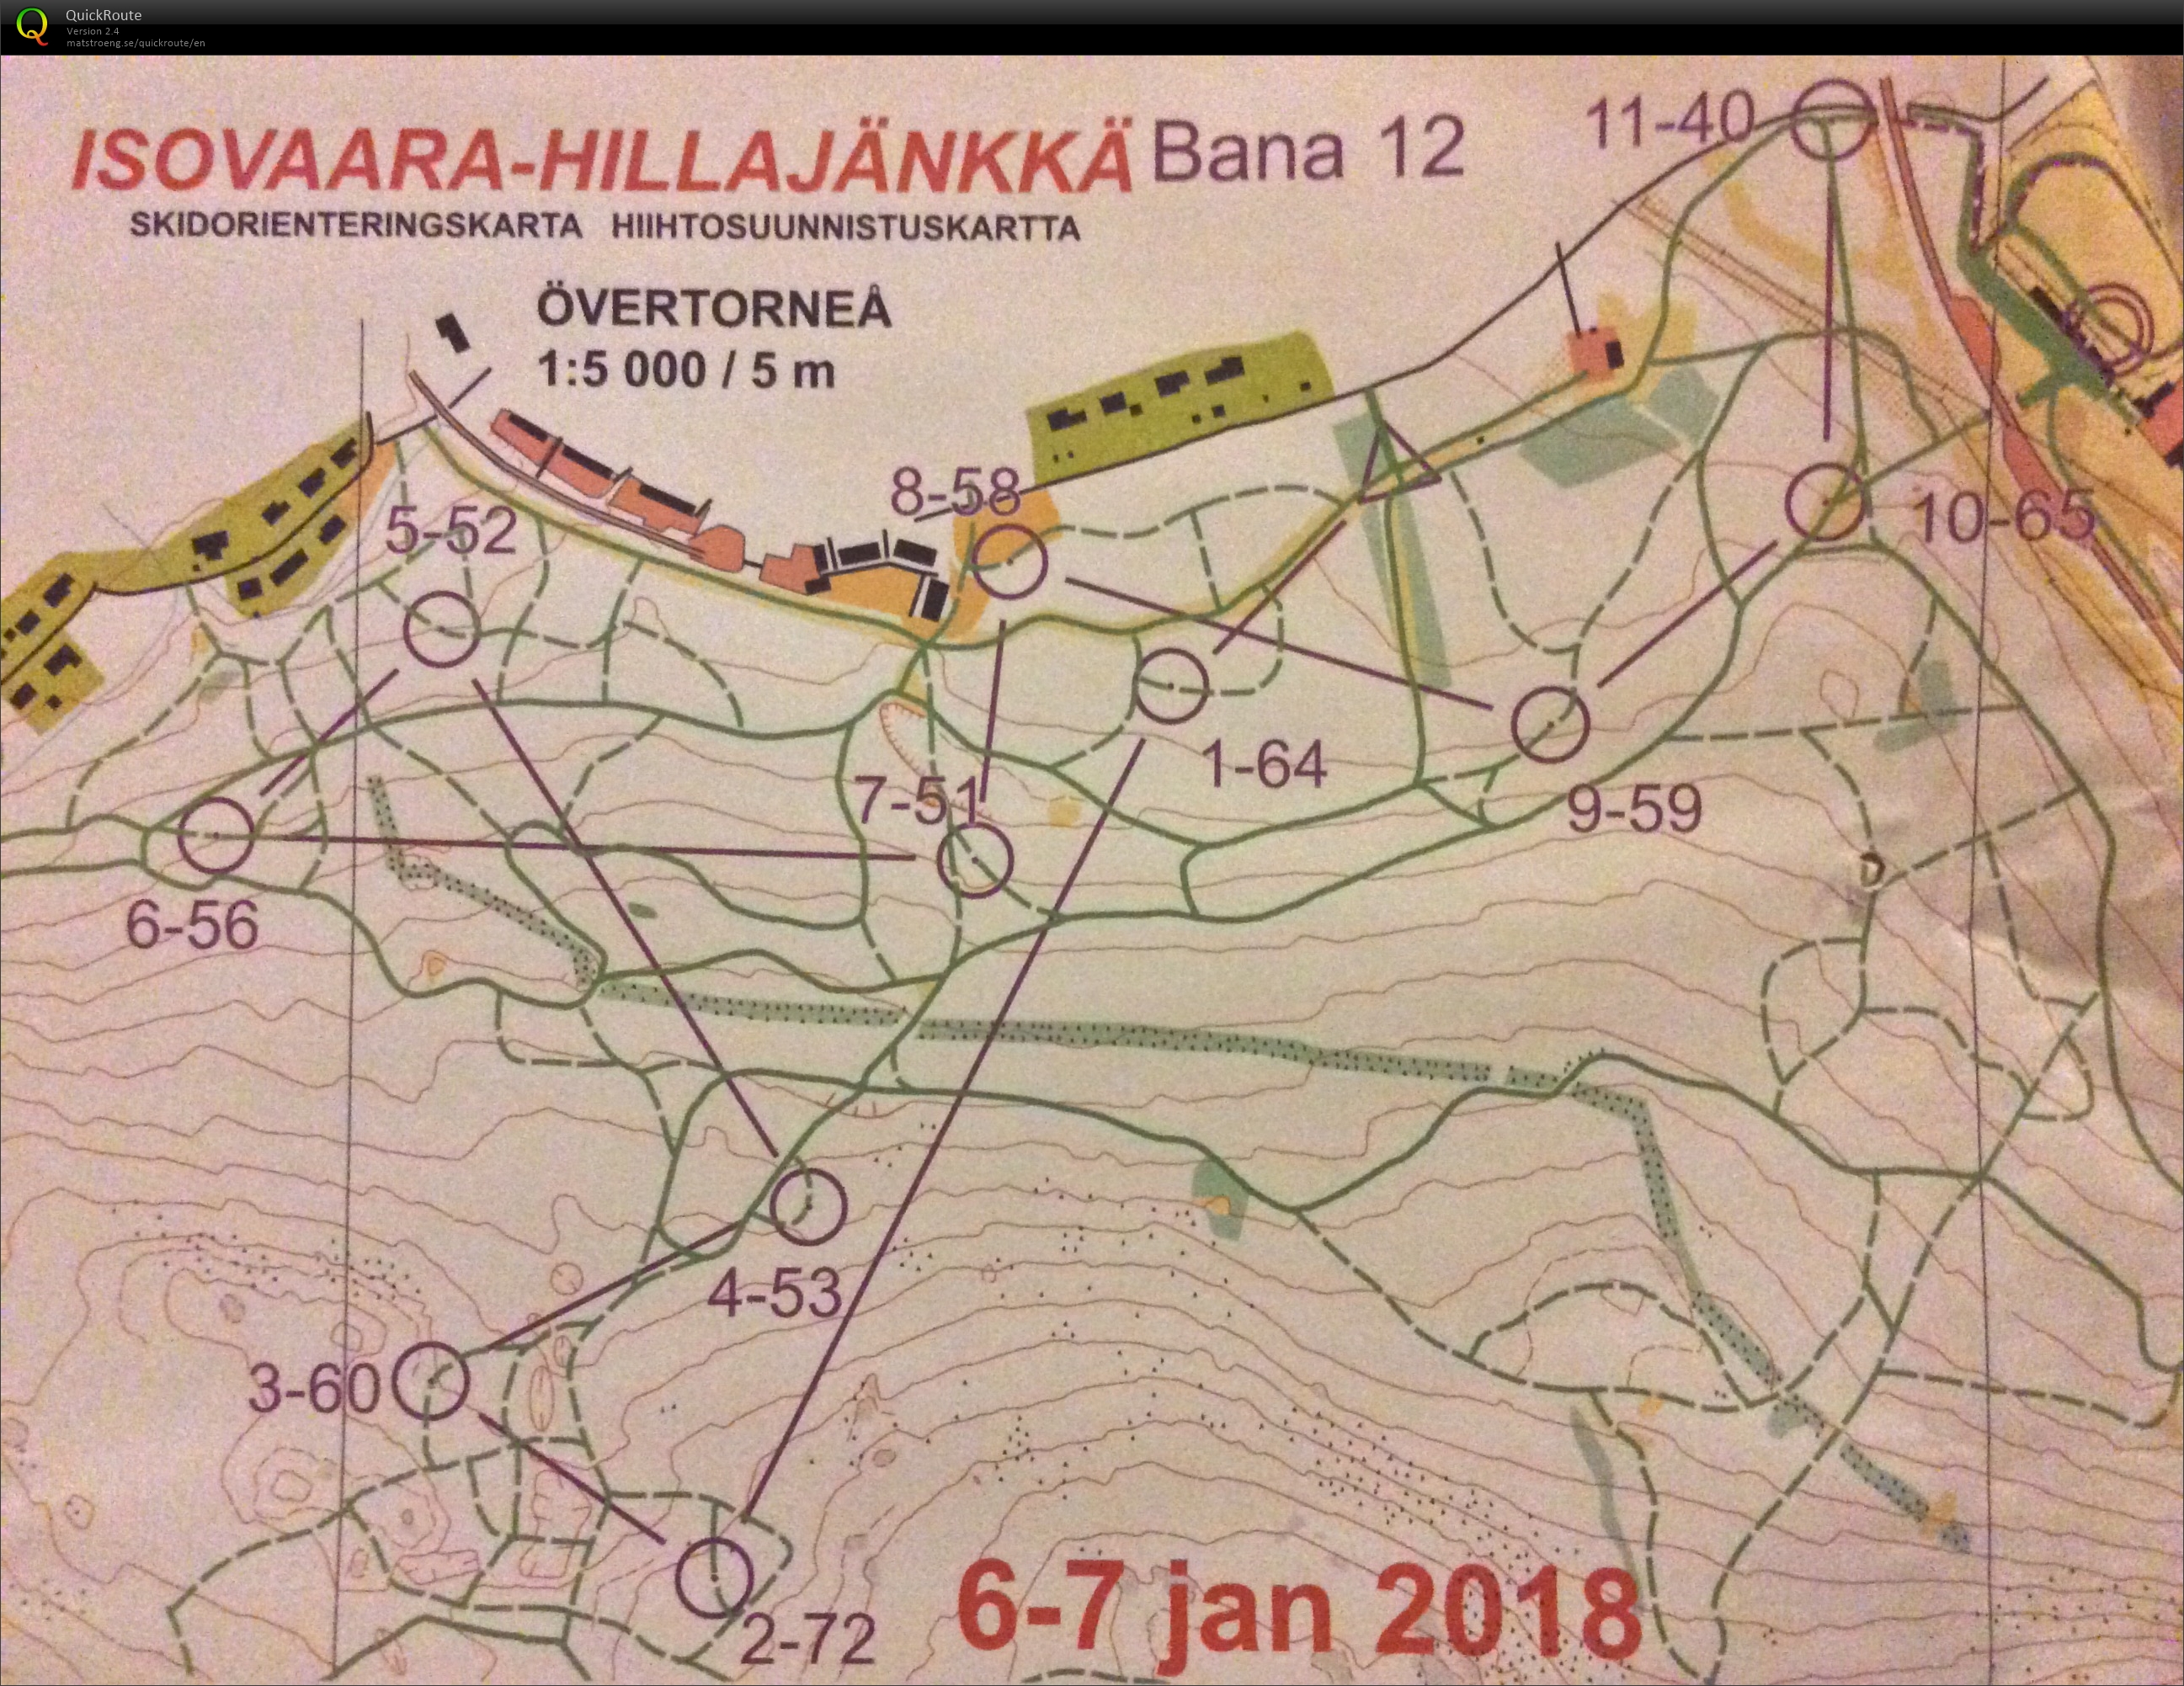 Skidorientering Övertorneå Sprint (07/01/2018)